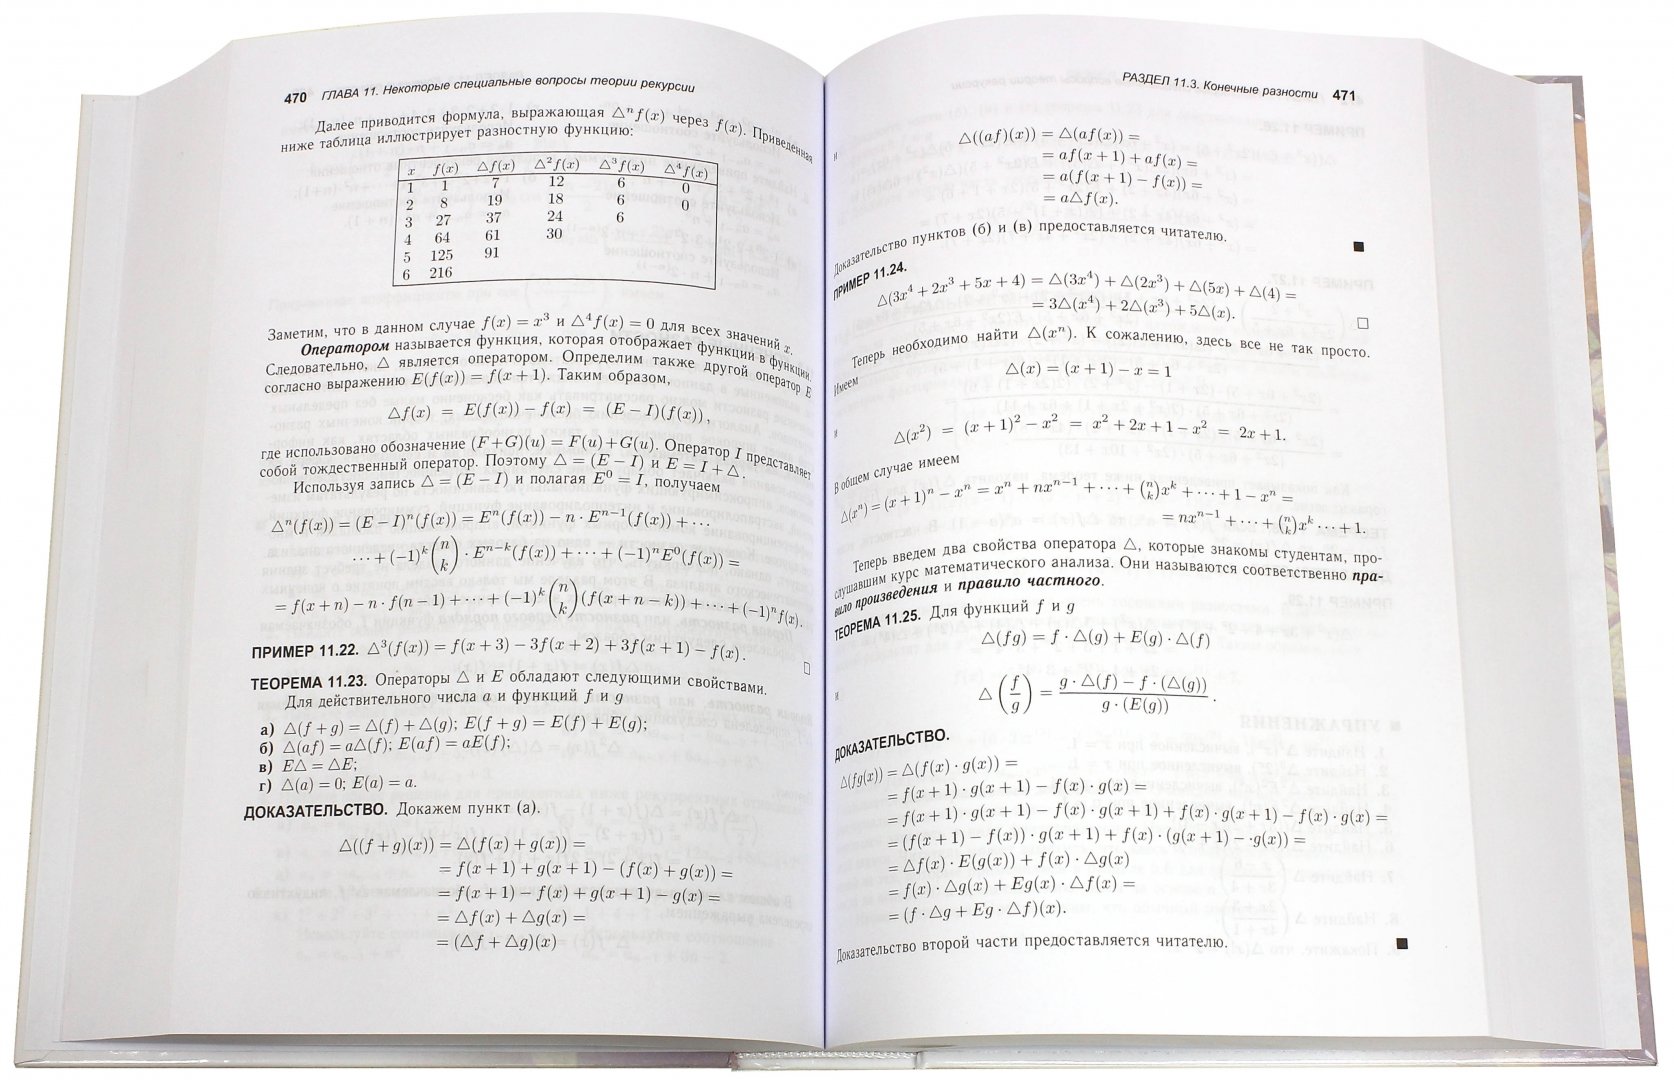 Иллюстрация 1 из 6 для Дискретная математика и комбинаторика - Джеймс Андерсон | Лабиринт - книги. Источник: Лабиринт